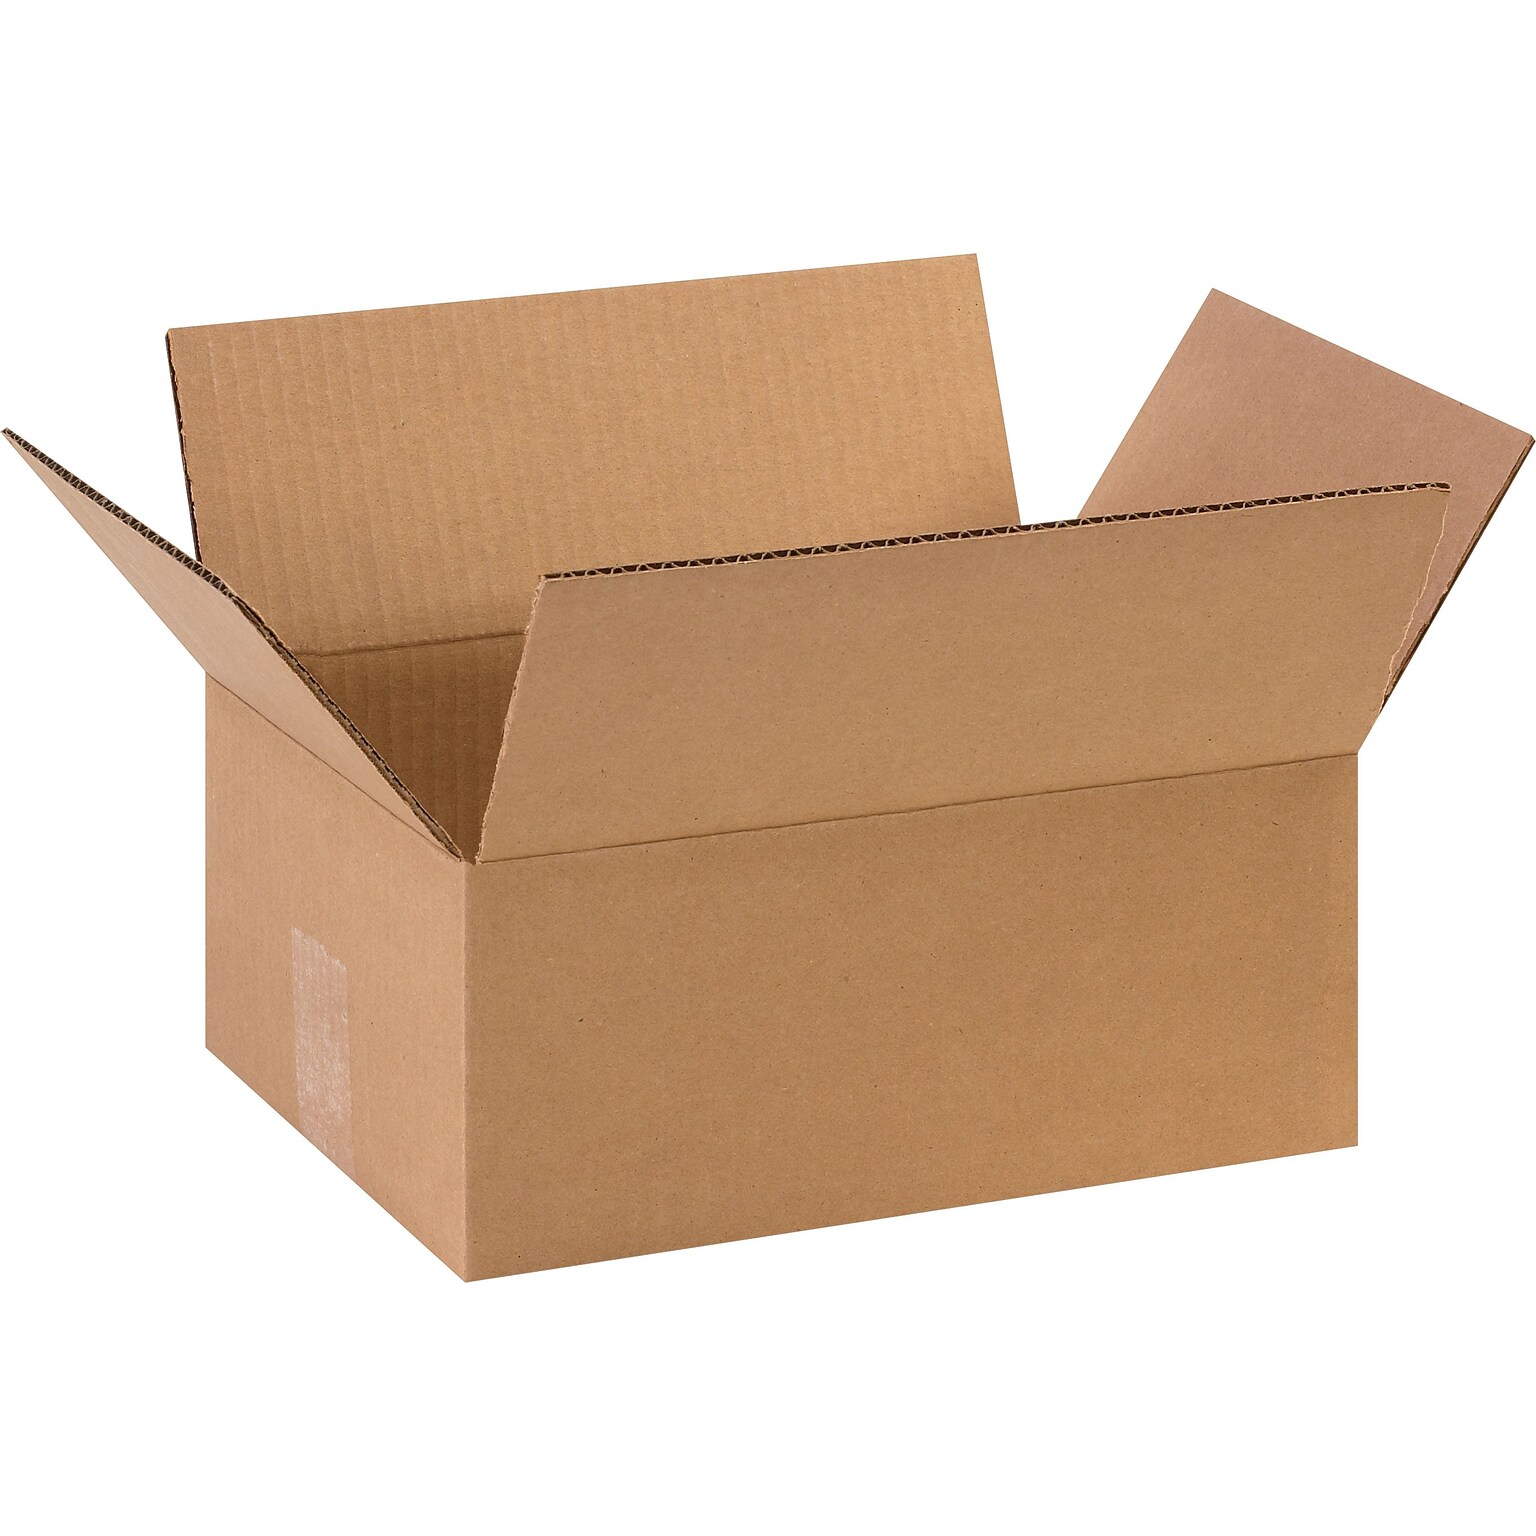 11.75 x 8.75 x 4.75 Shipping Boxes, 32 ECT, Brown, 25/Bundle (1184SC)